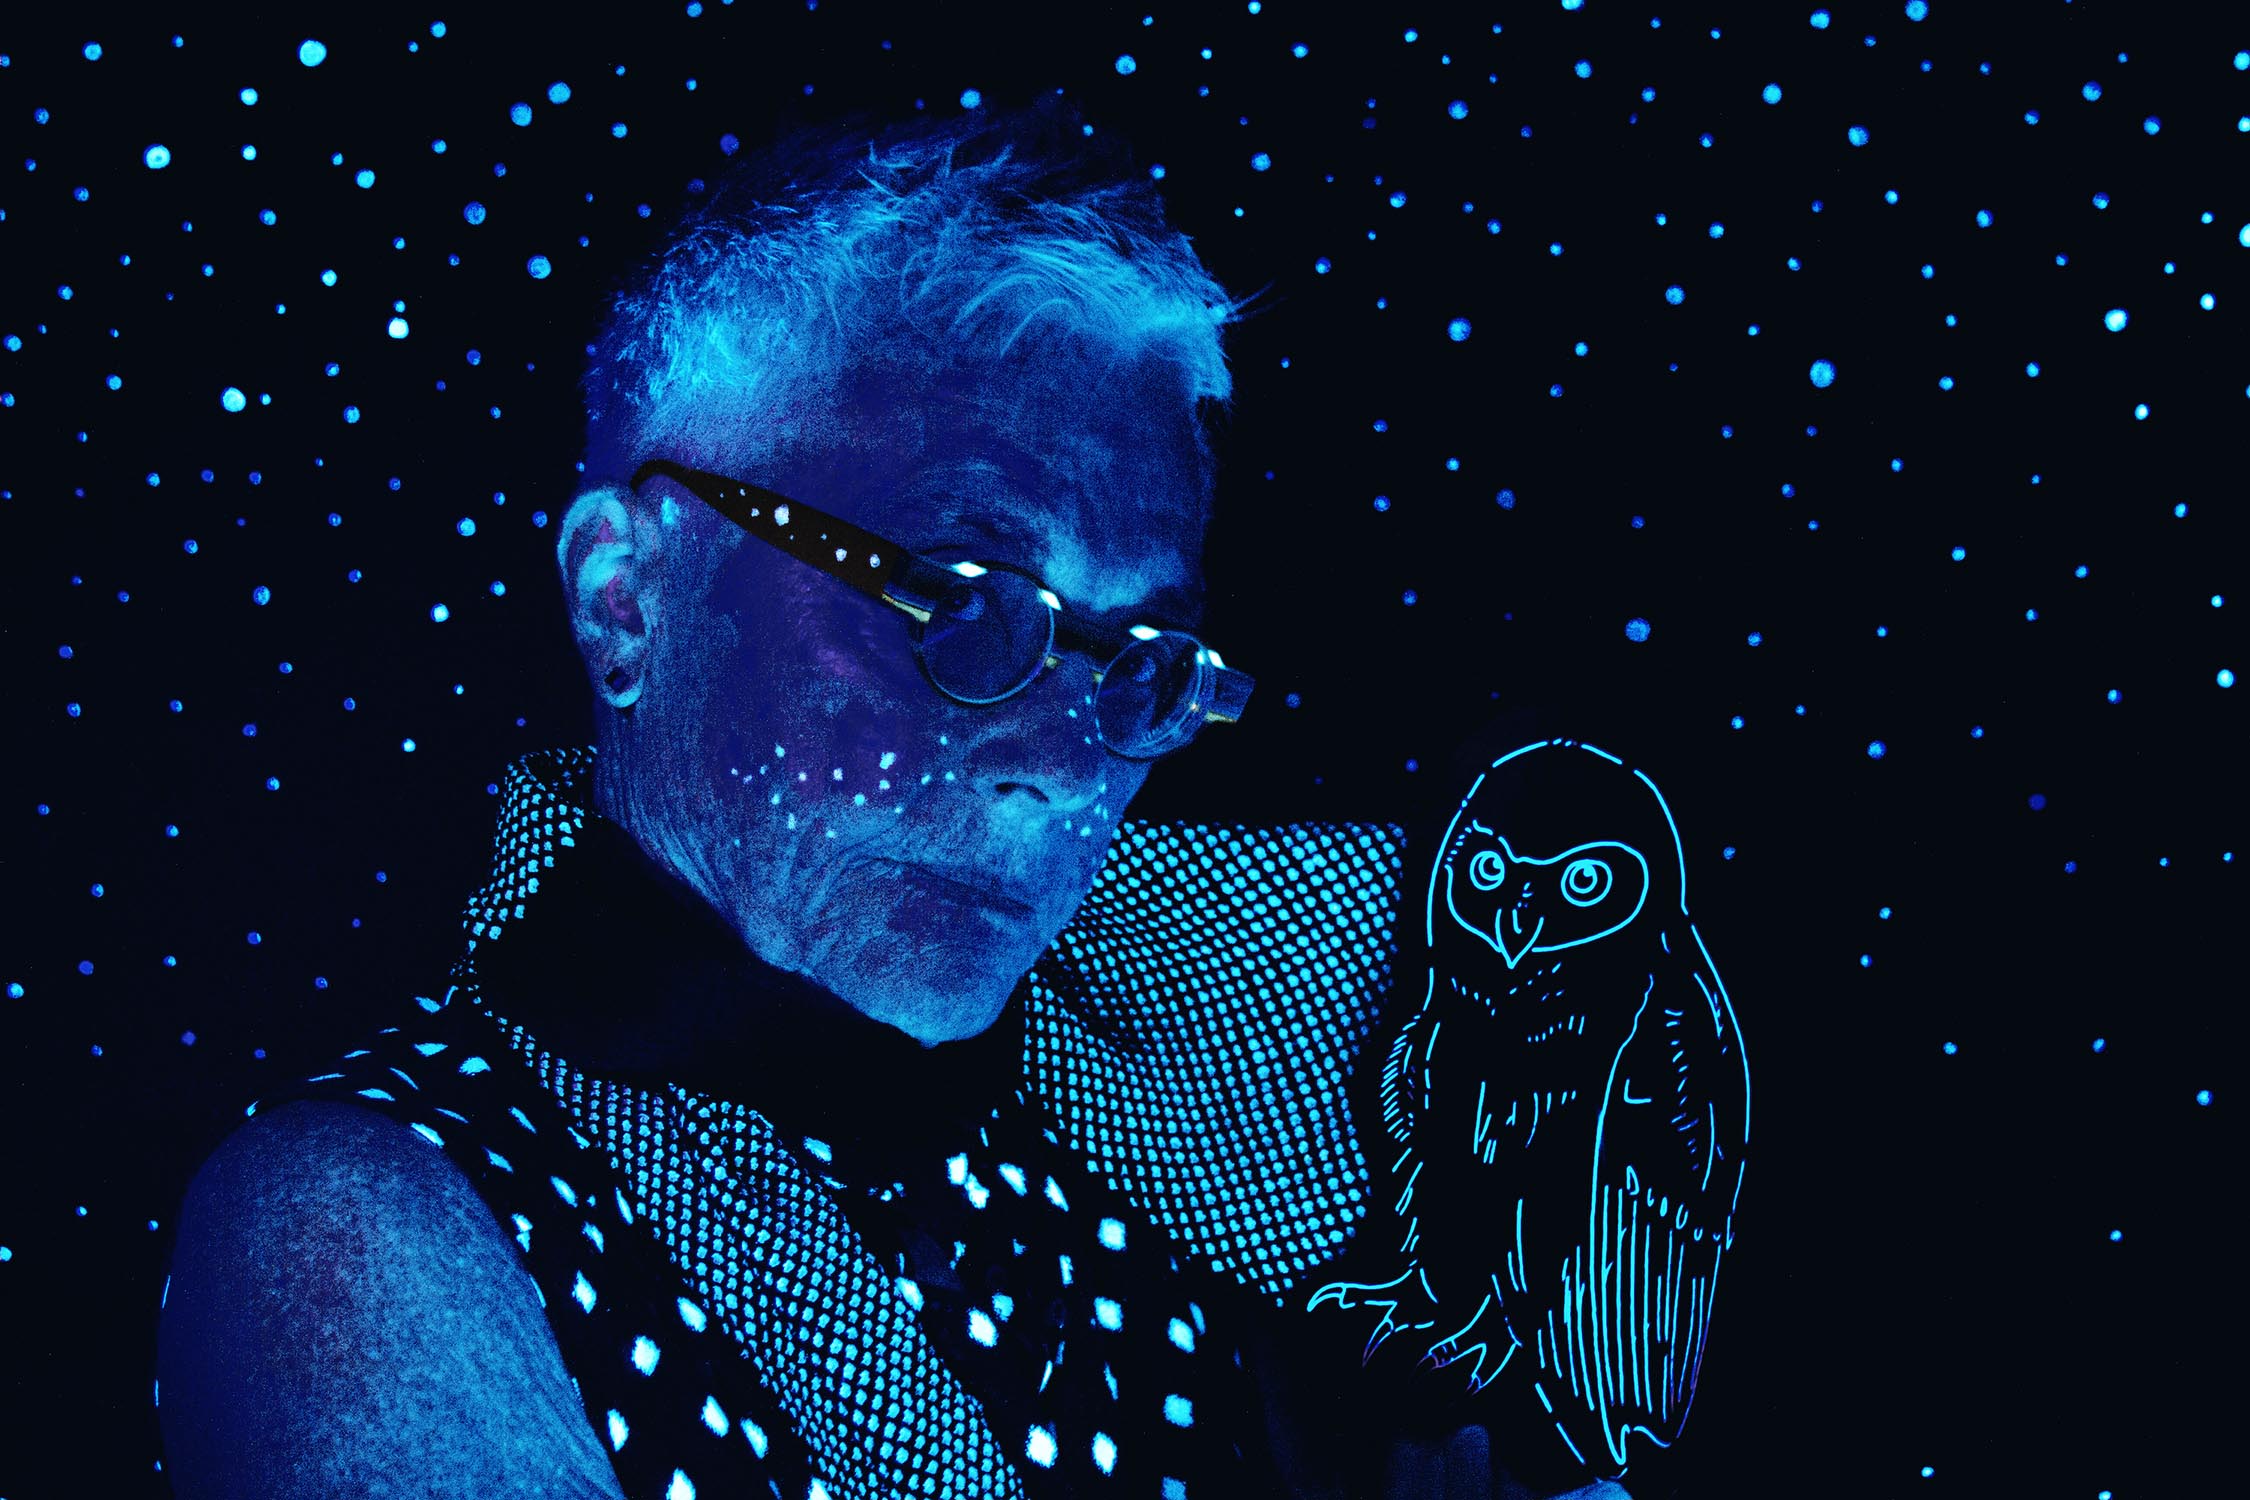 Barbara Hammer blacklight with owl 2014